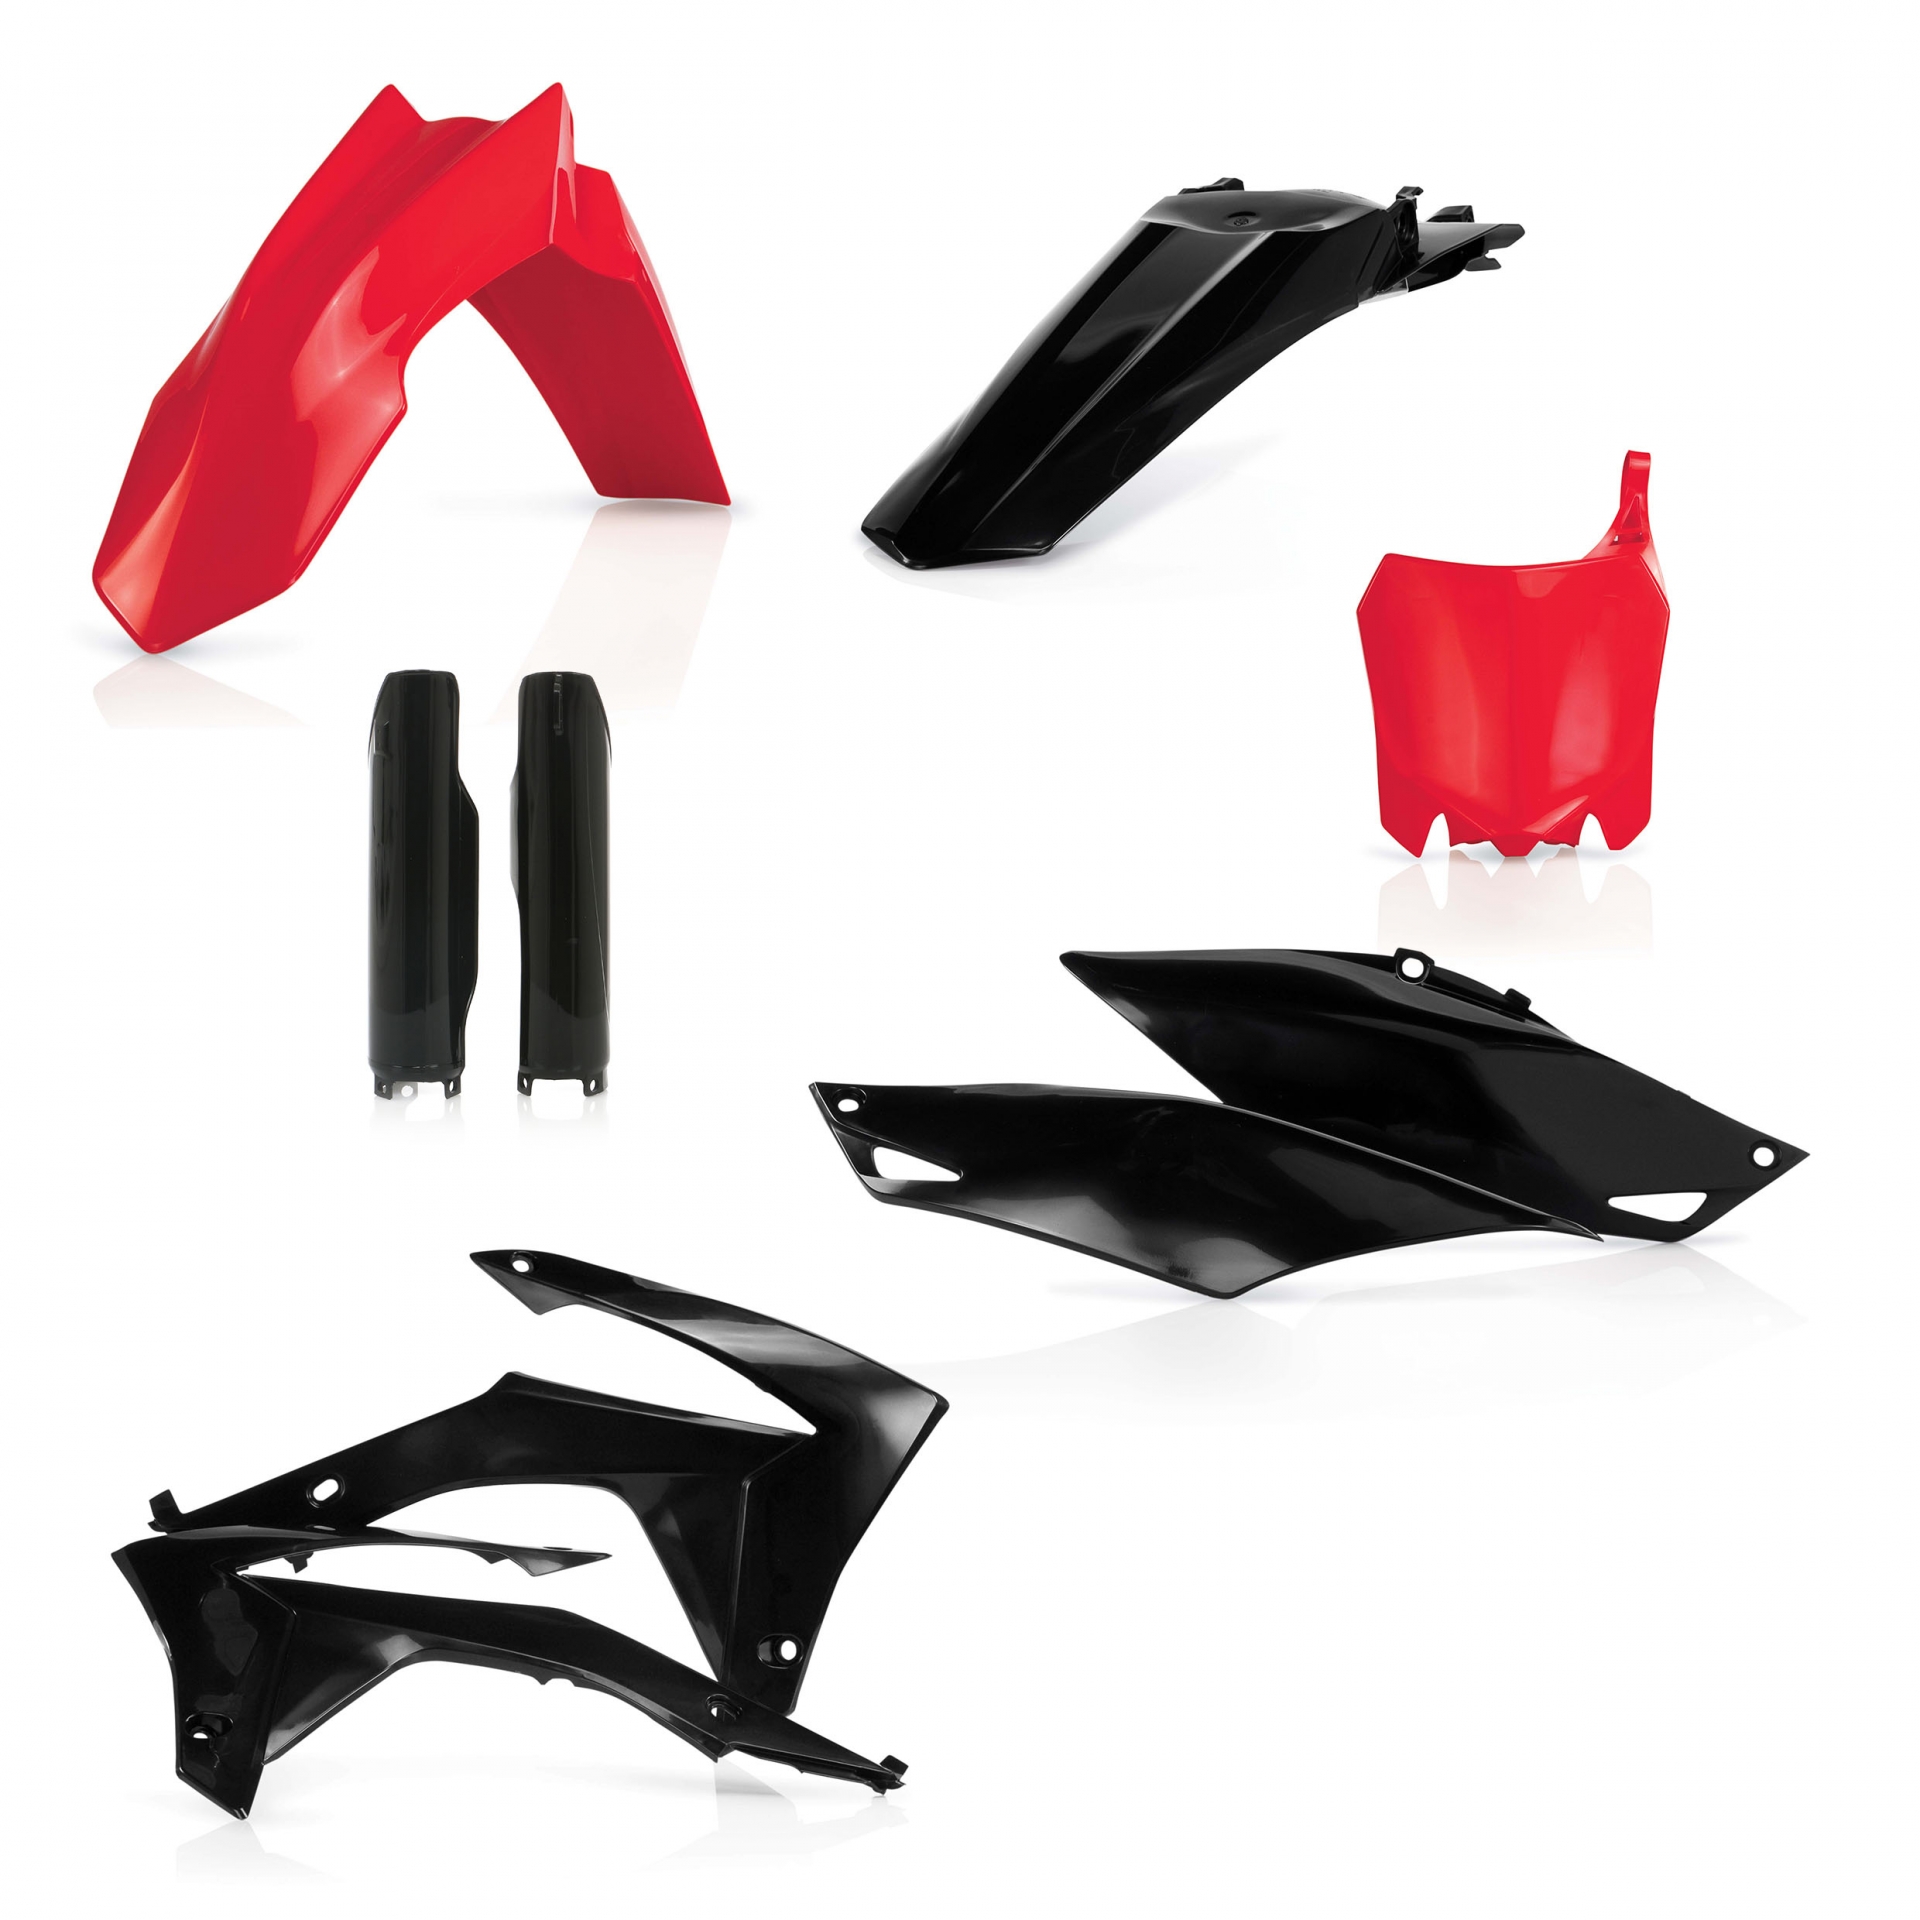 Plastikteile für deine Honda CRF / CR 250/450 in rot-schwarz bestehend aus Kotflügel vorn Kotflügel hinten Kühlerspoiler Seitenteile Gabelschützer Startnummerntafel